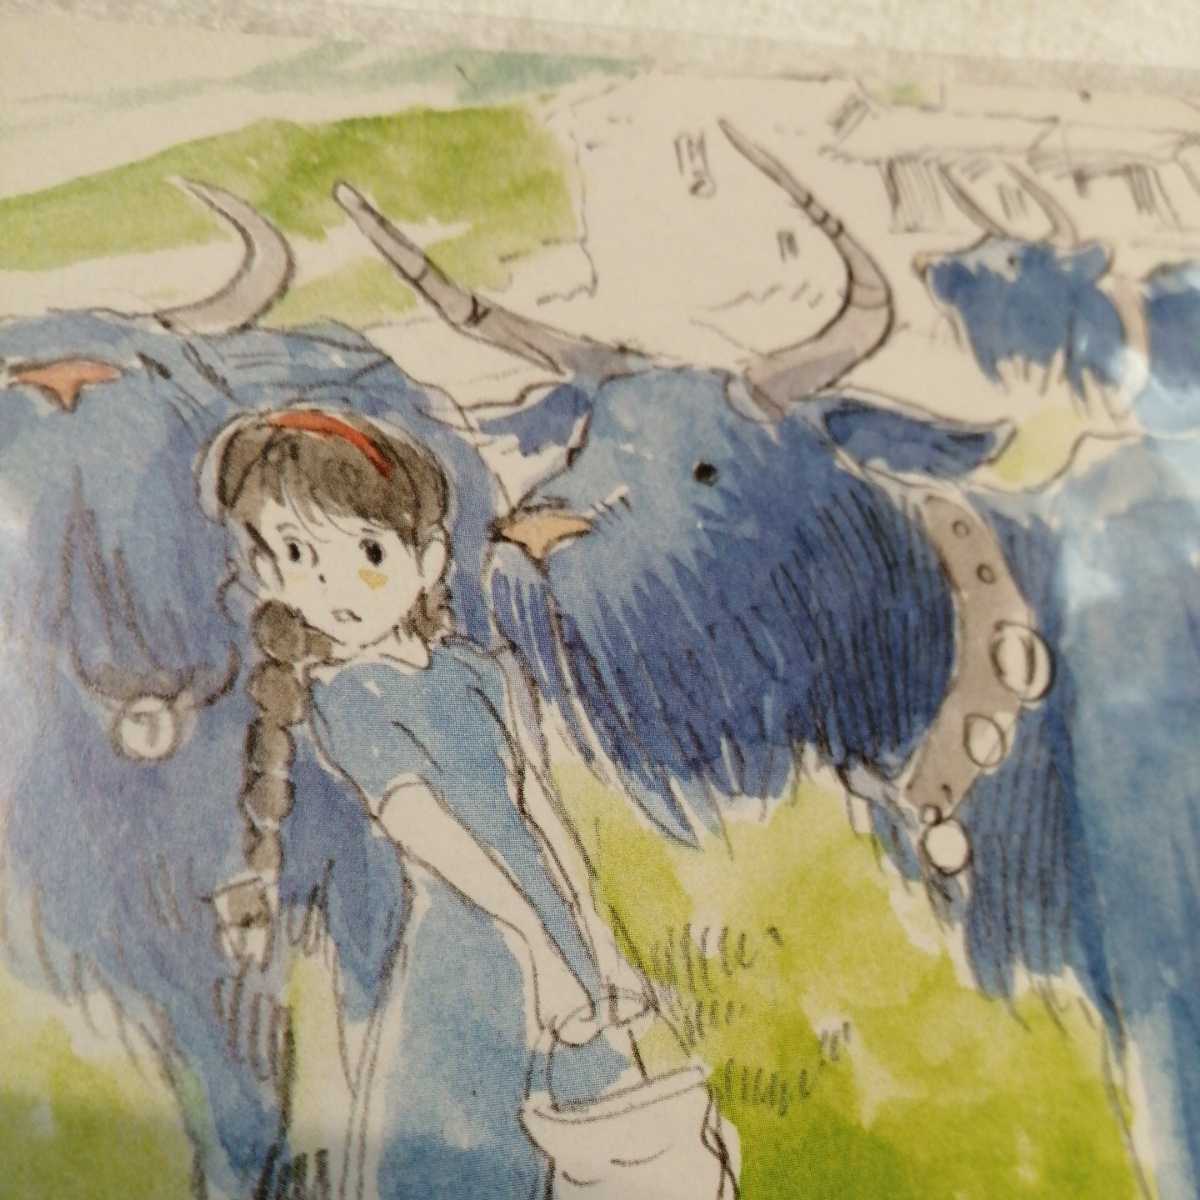 初回限定】 宮崎駿 イメージボード集 トトロ もののけ姫 ジブリ